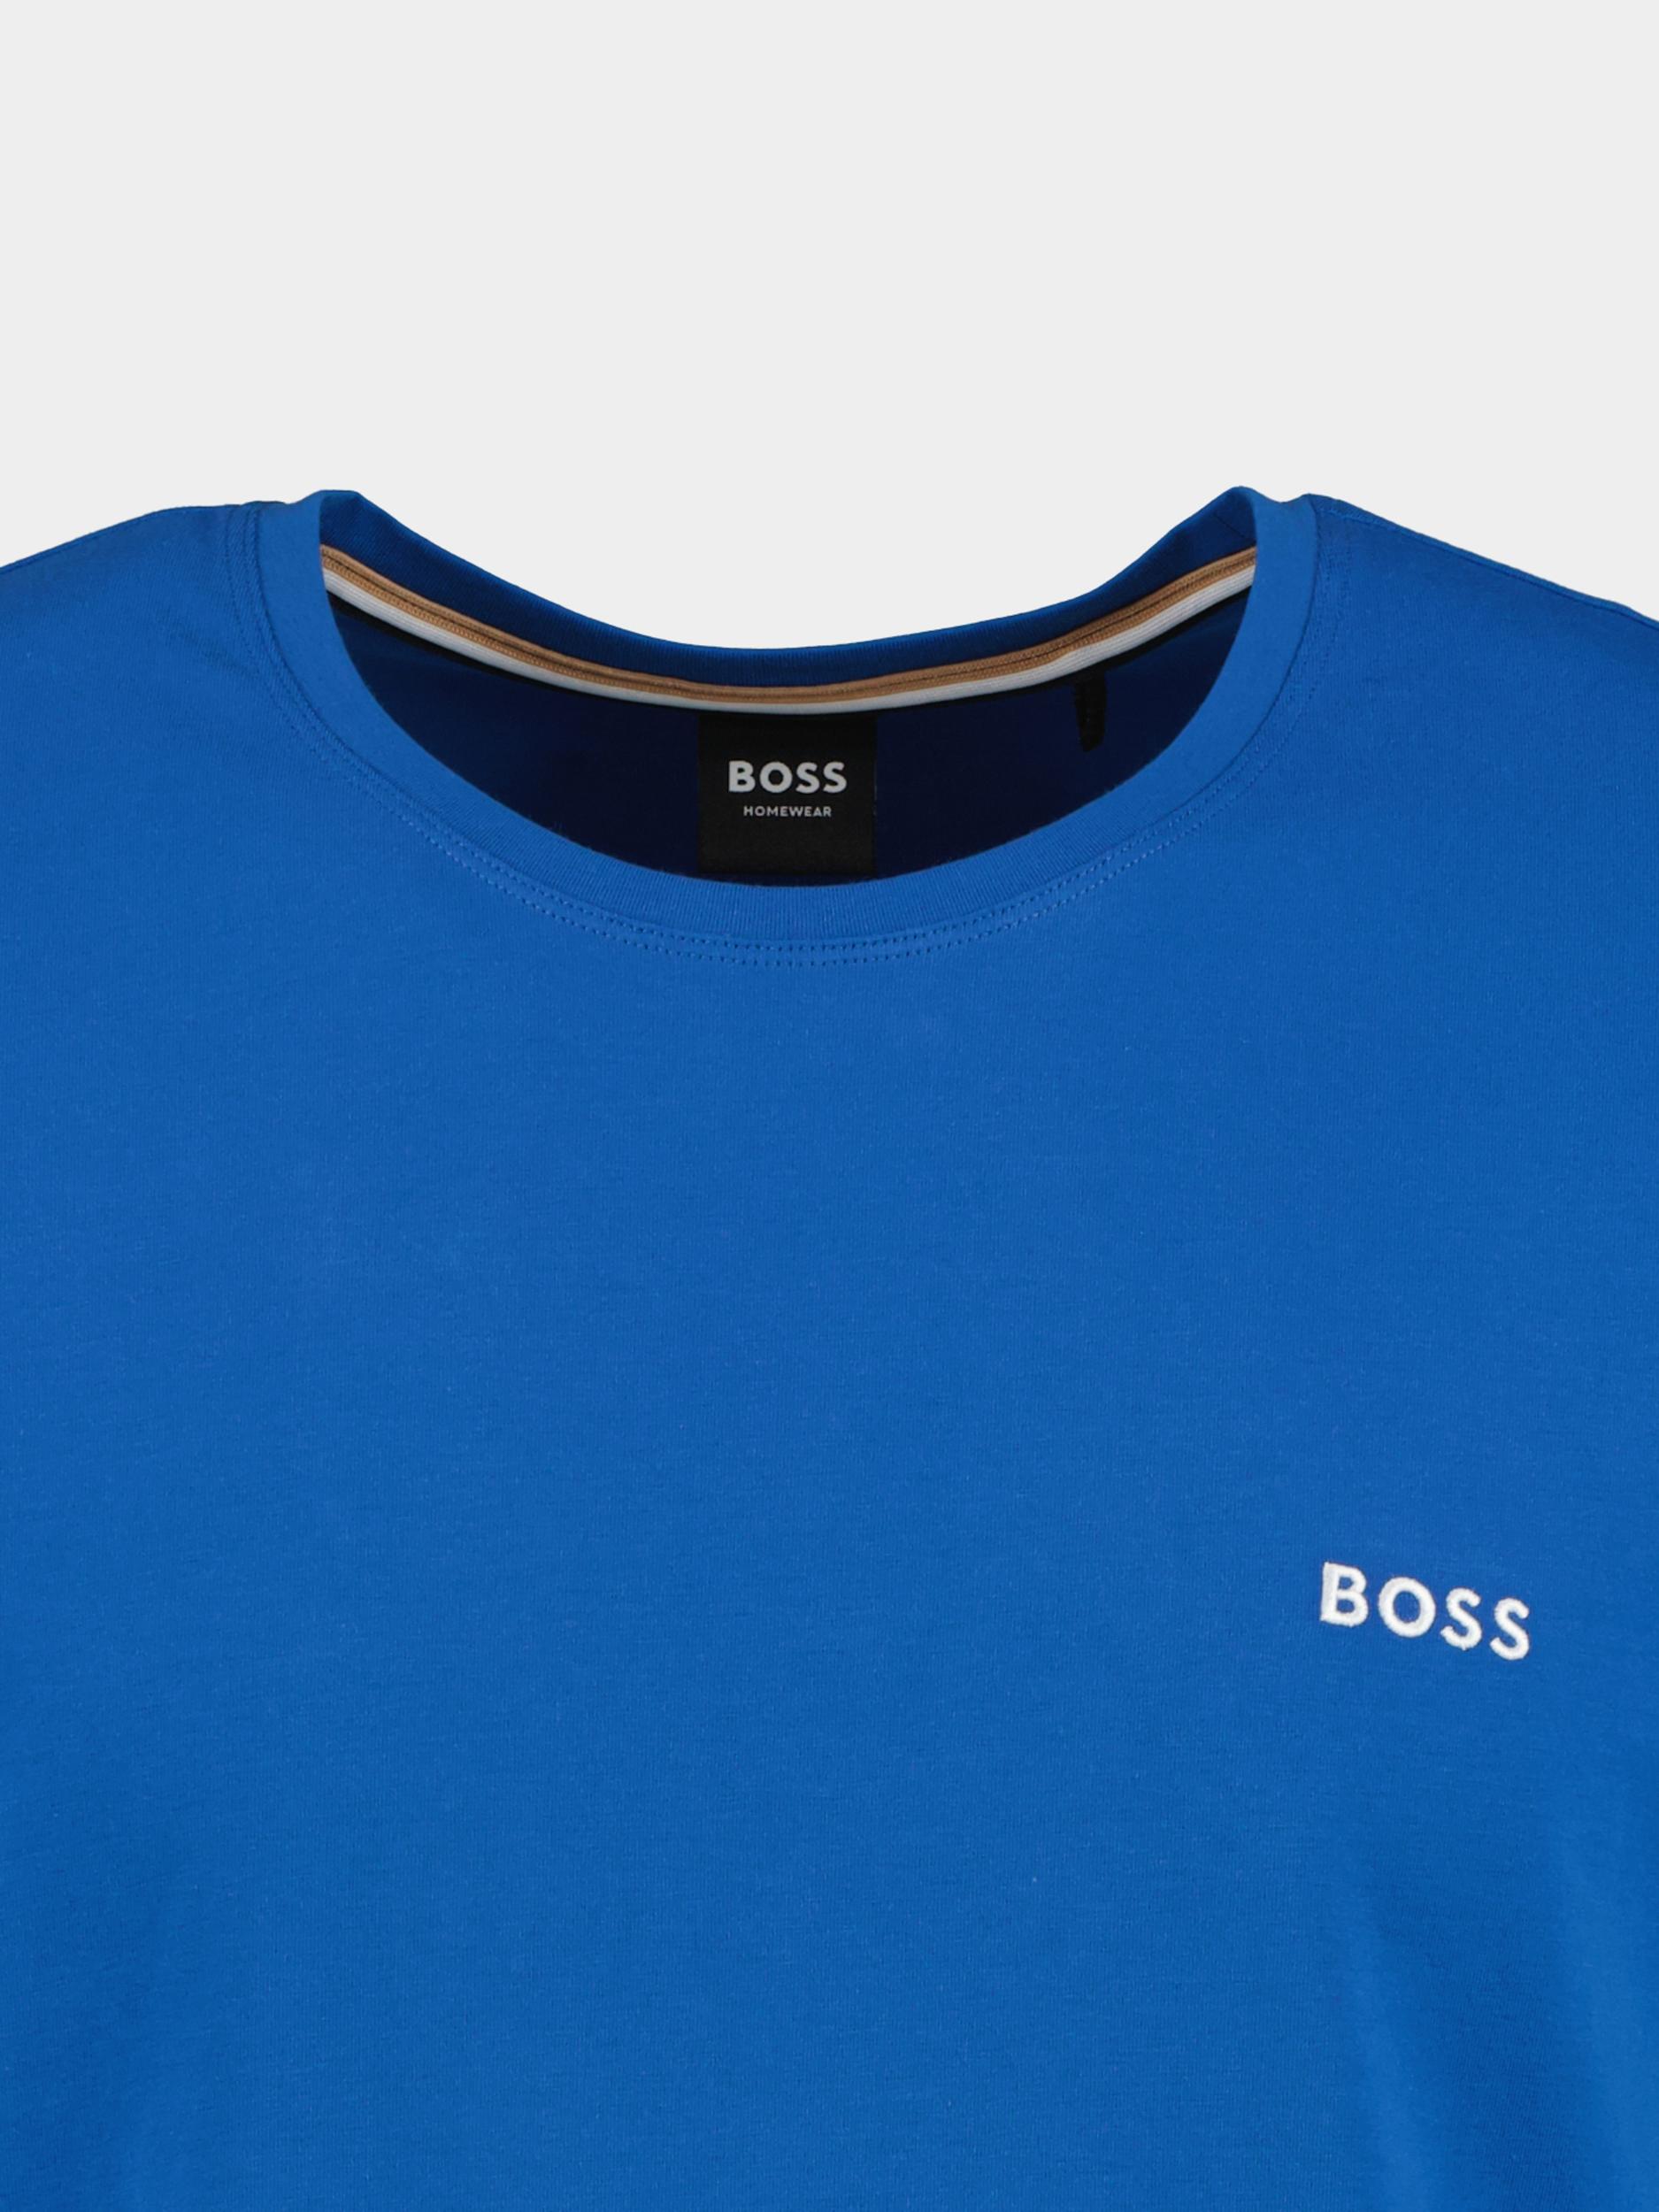 BOSS Black T-shirt korte mouw Blauw Mix&Match T-Shirt R 10259900 50515312/423